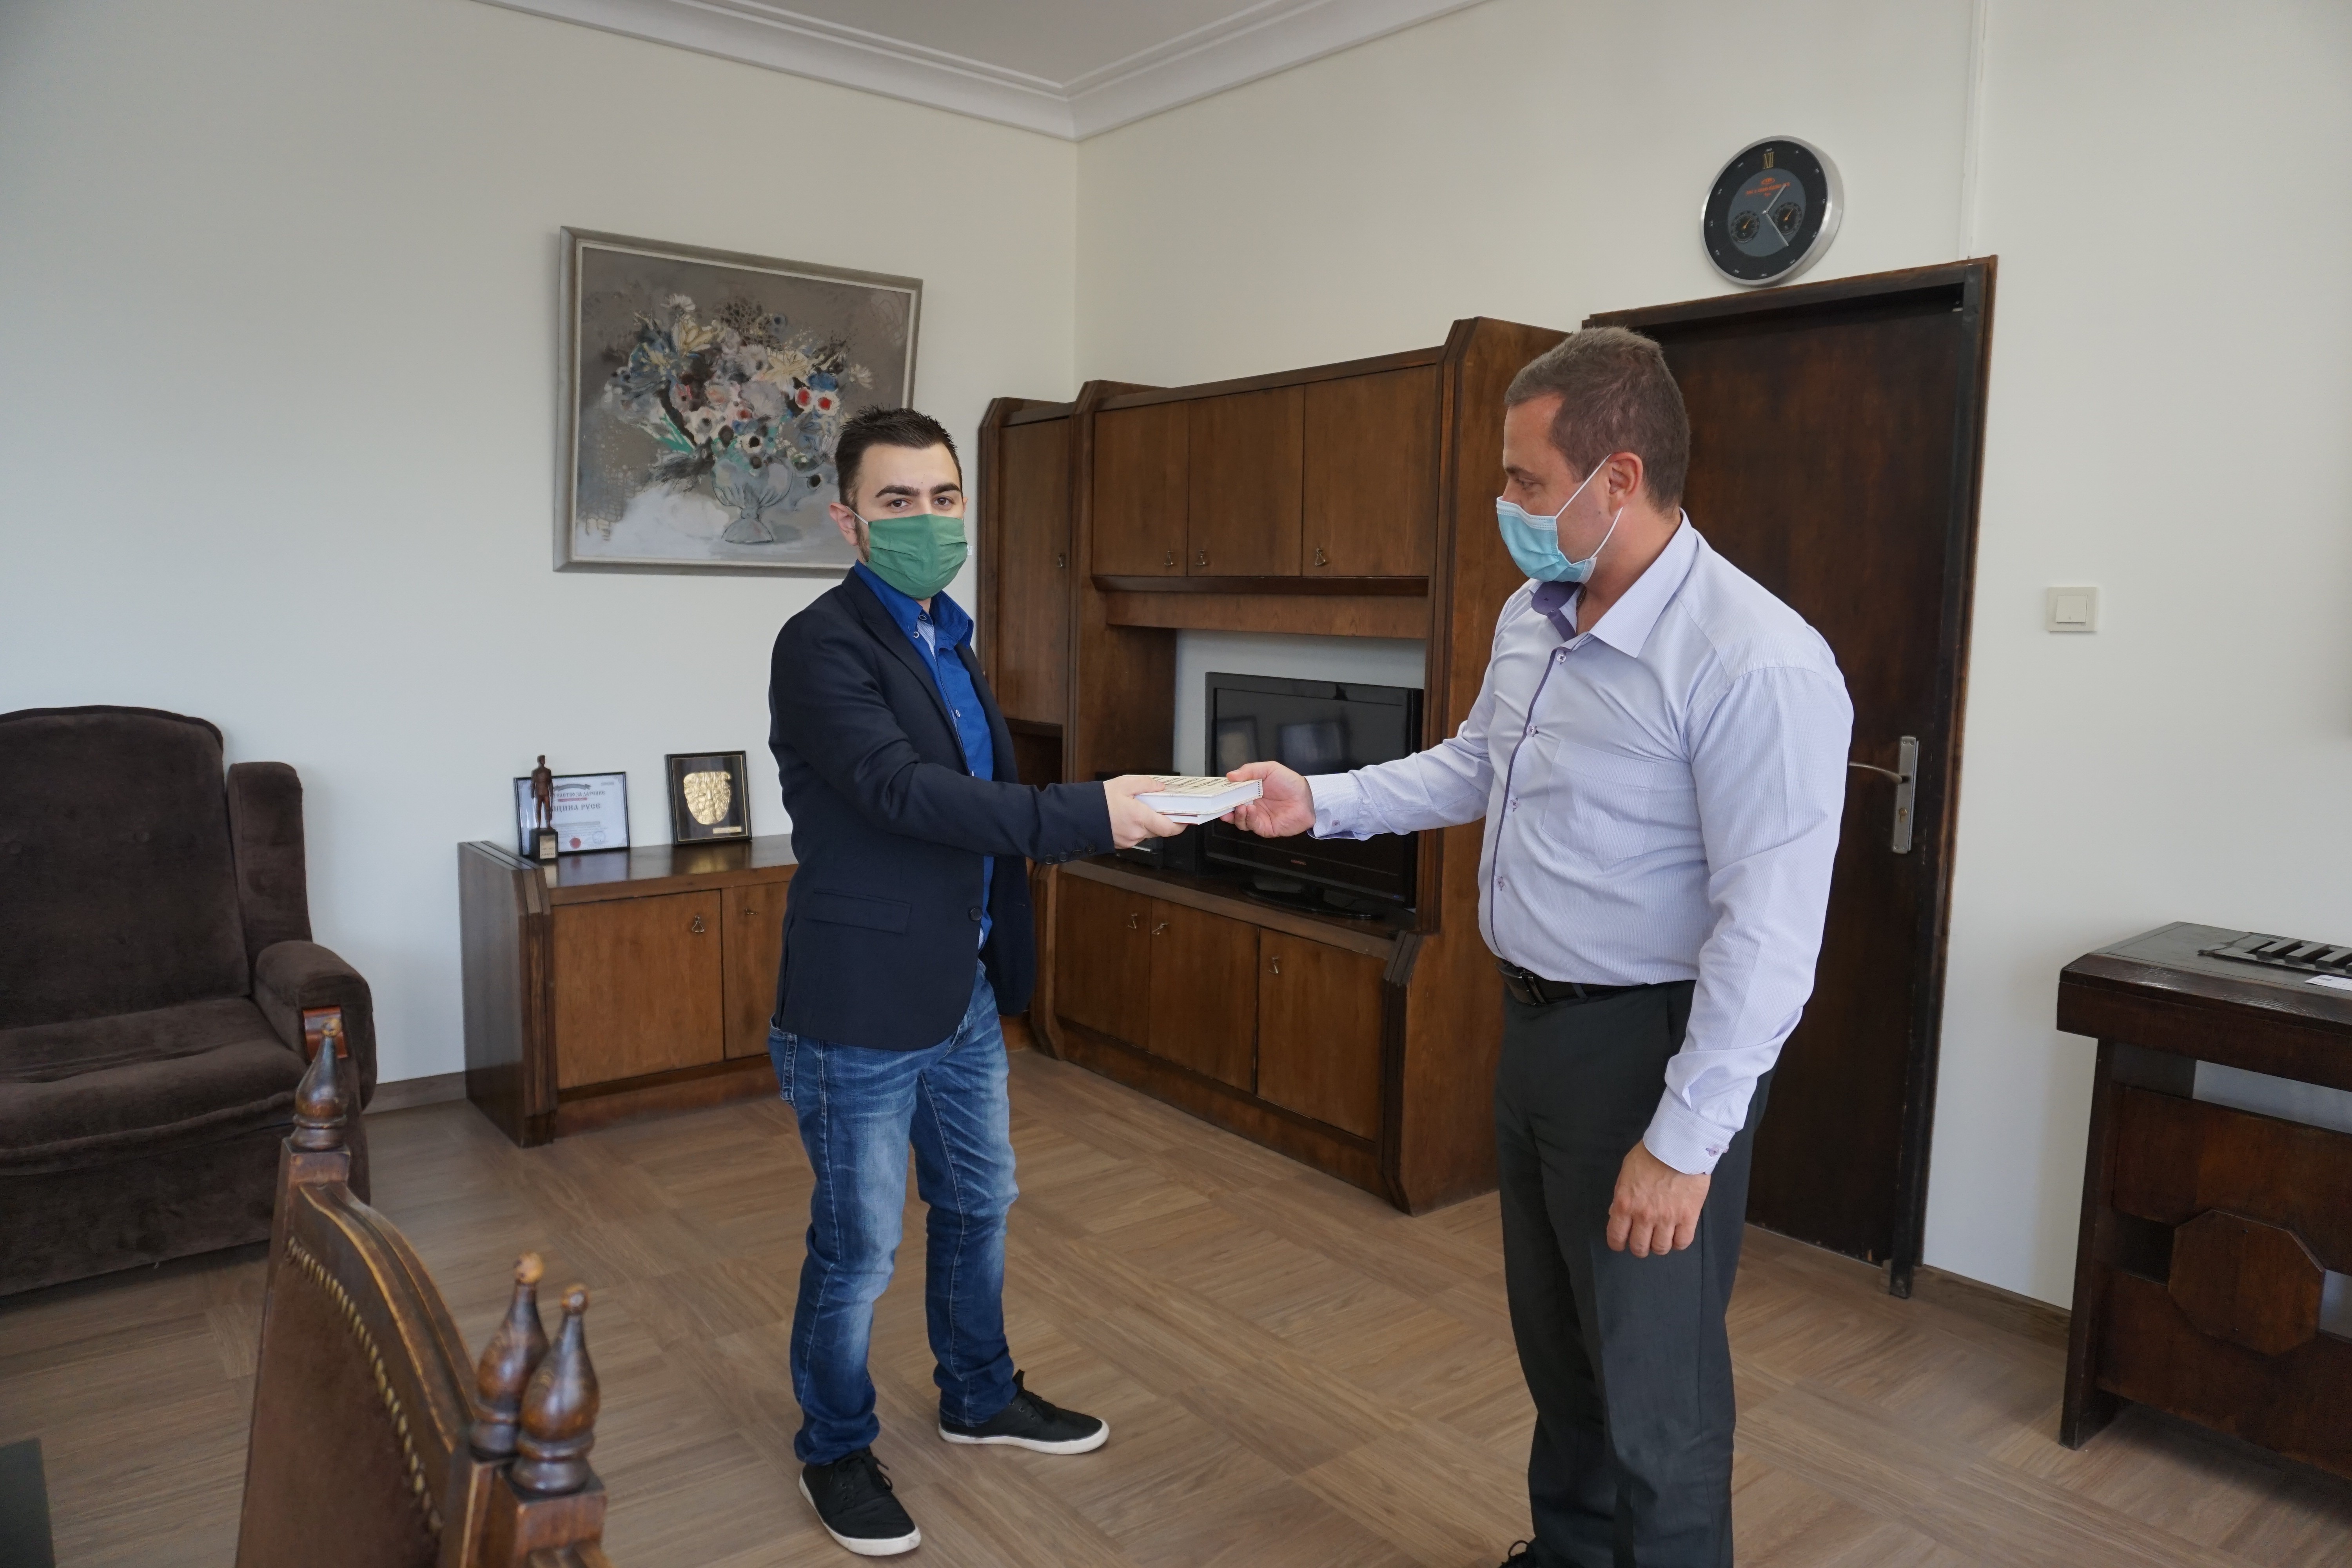 Кметът Пенчо Милков дари книги за фонда на читалището в град Глоджево